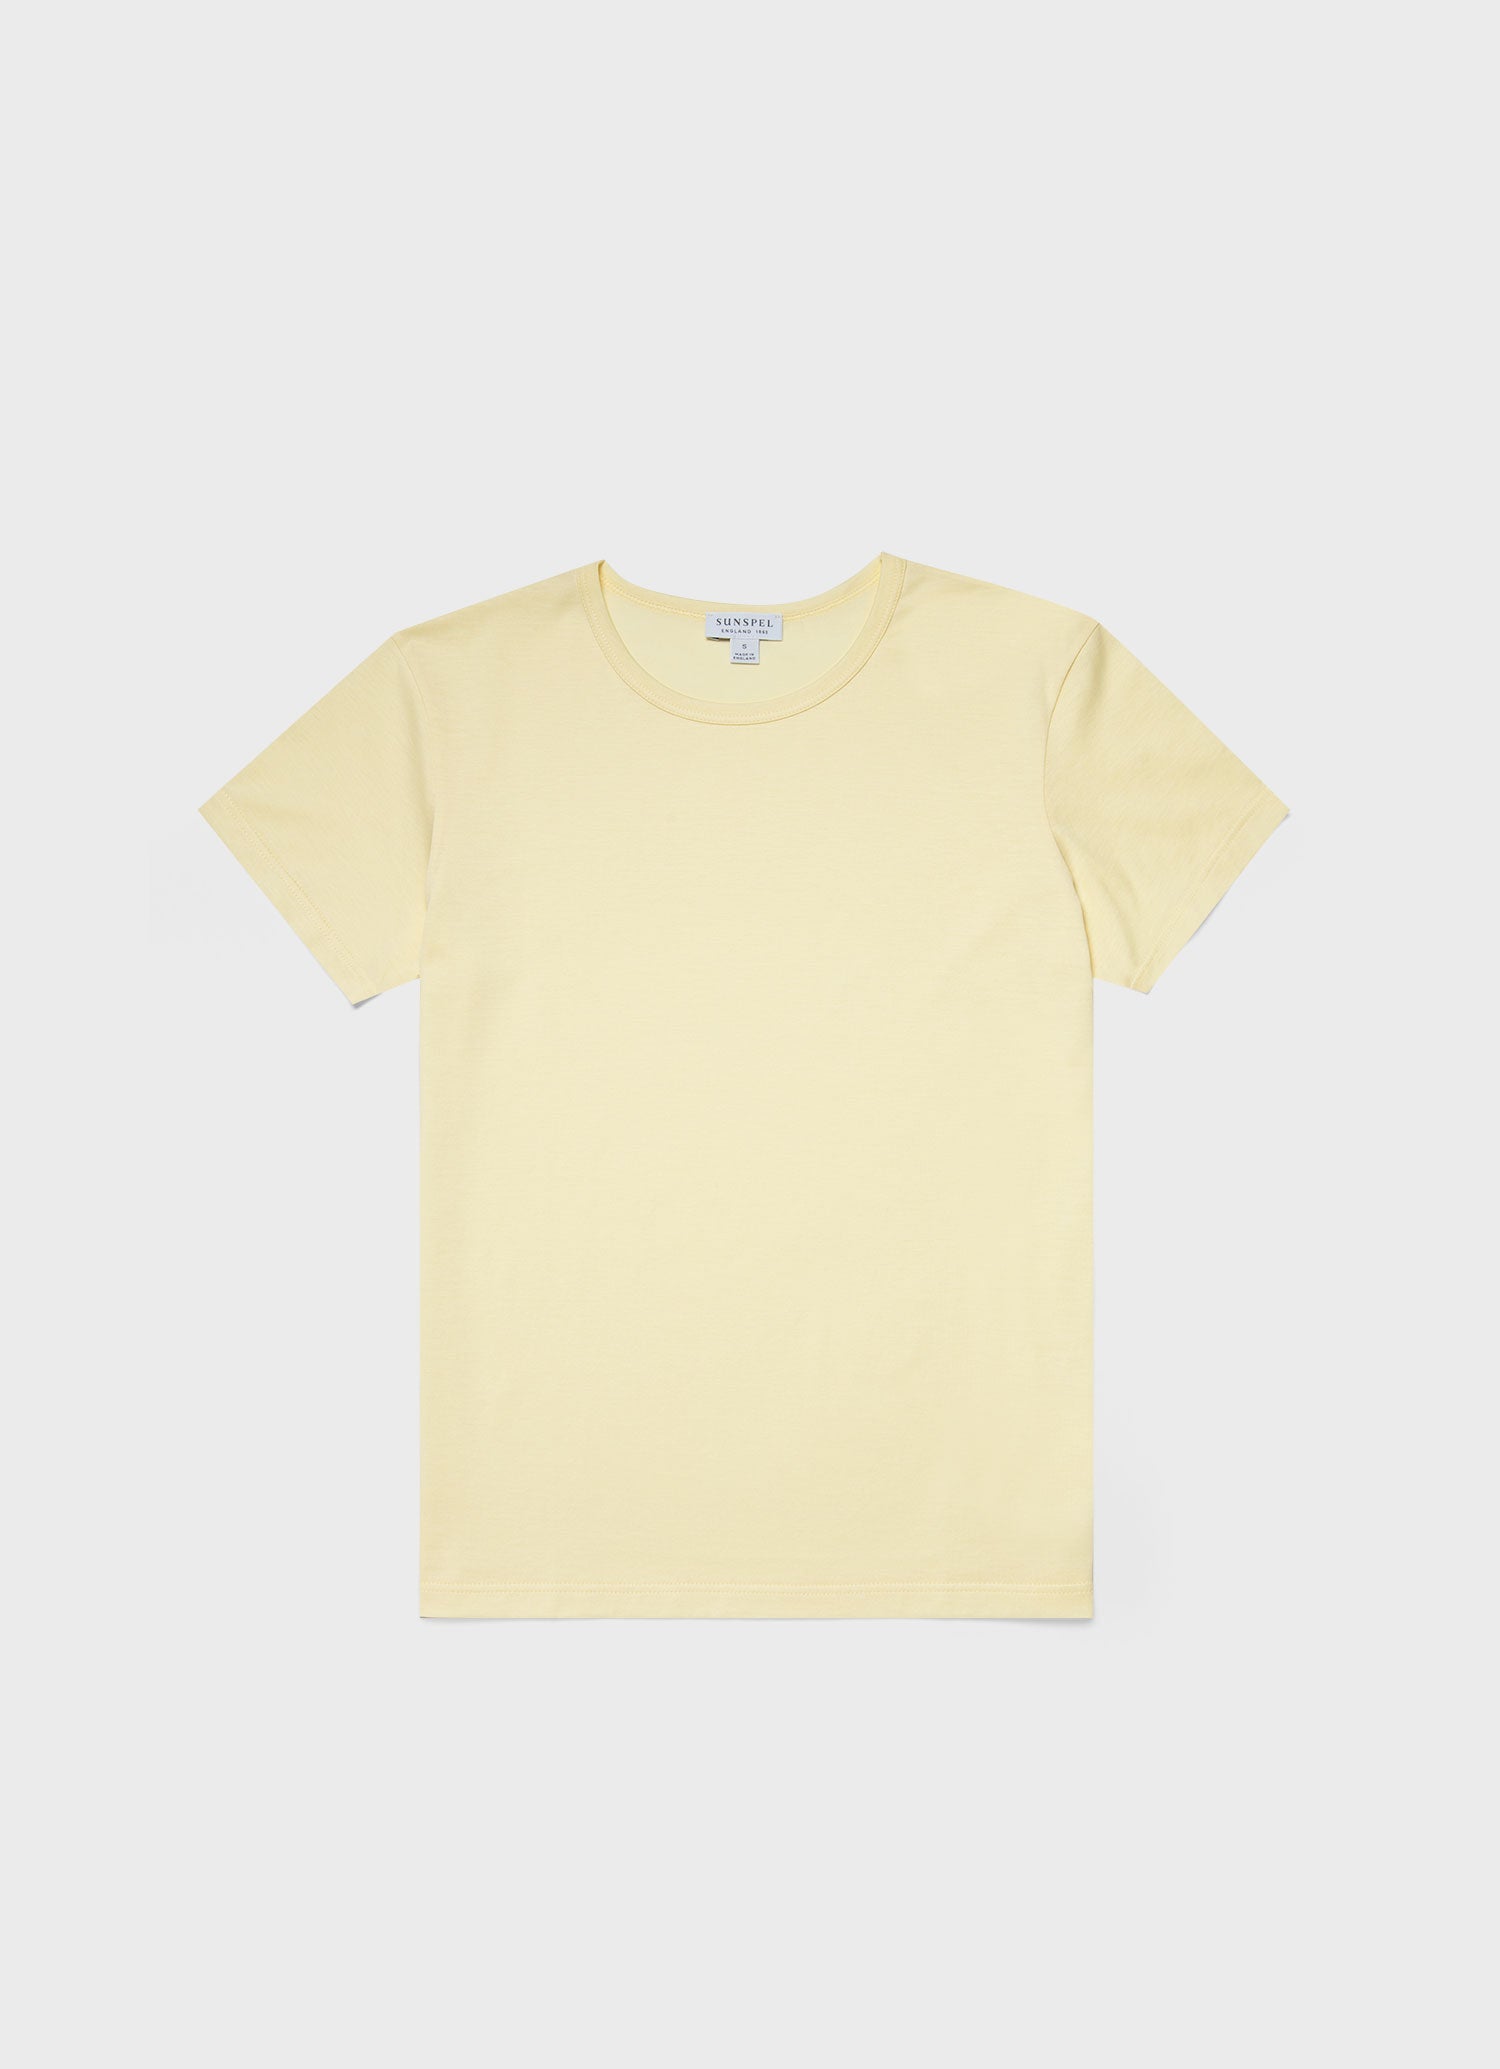 Women's Classic T-shirt in Lemon